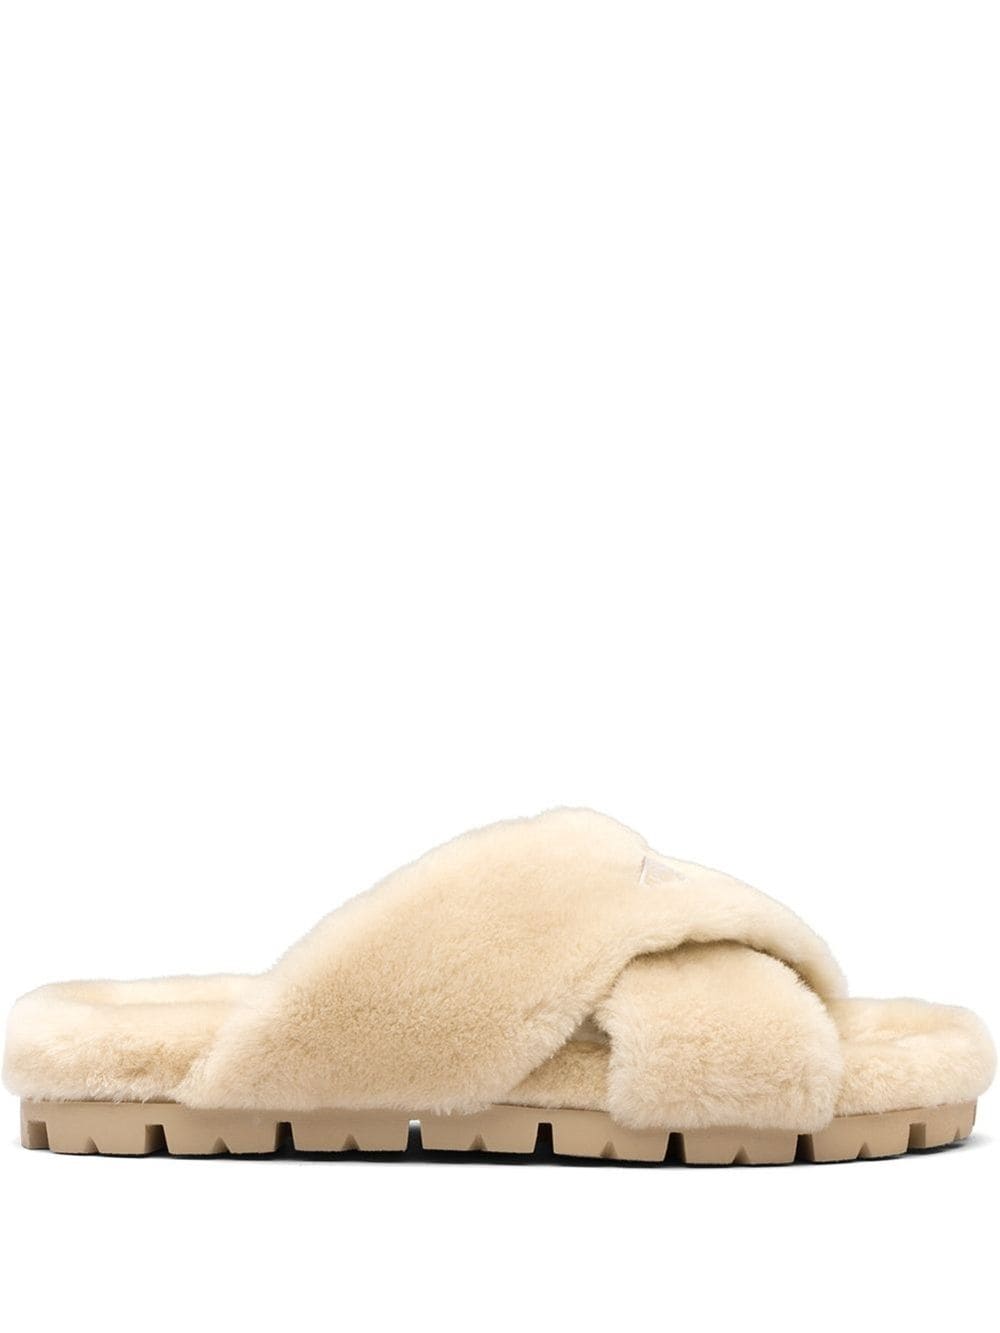 shearling flat sandals | Prada 